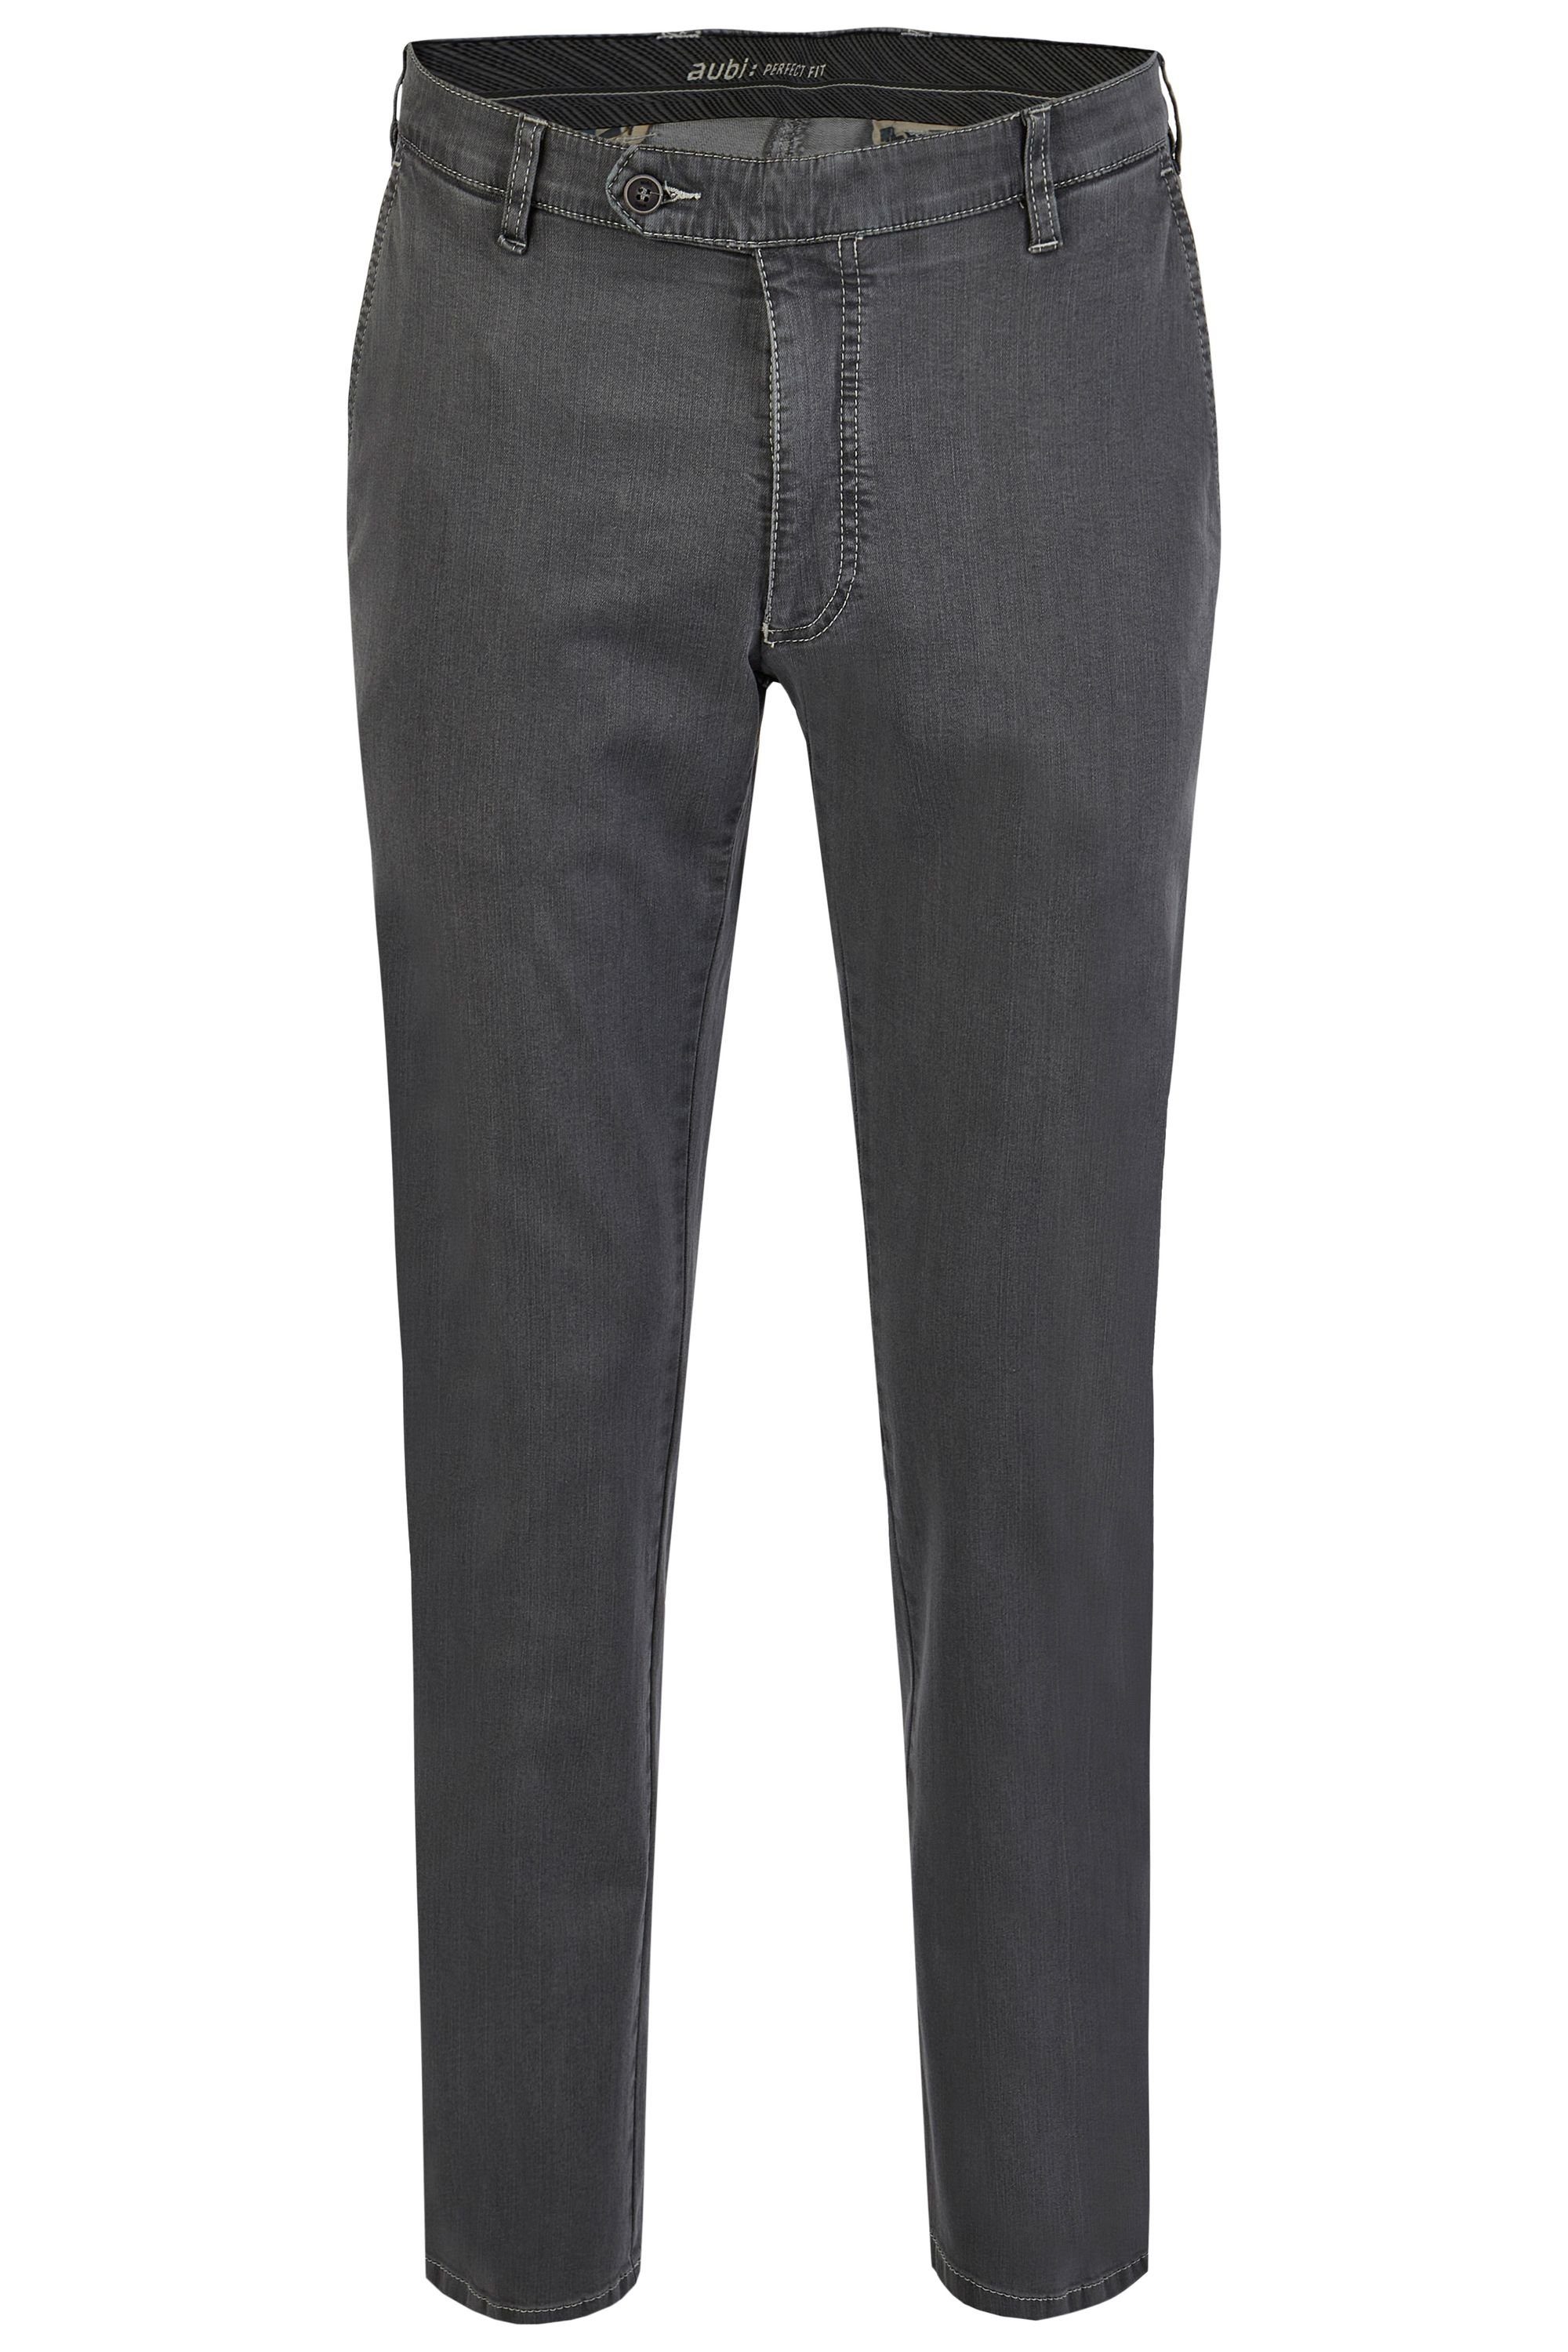 aubi: Bequeme Jeans aubi Perfect Fit Herren Sommer Jeans Hose Stretch aus Baumwolle High Flex Modell 526 grey (54)